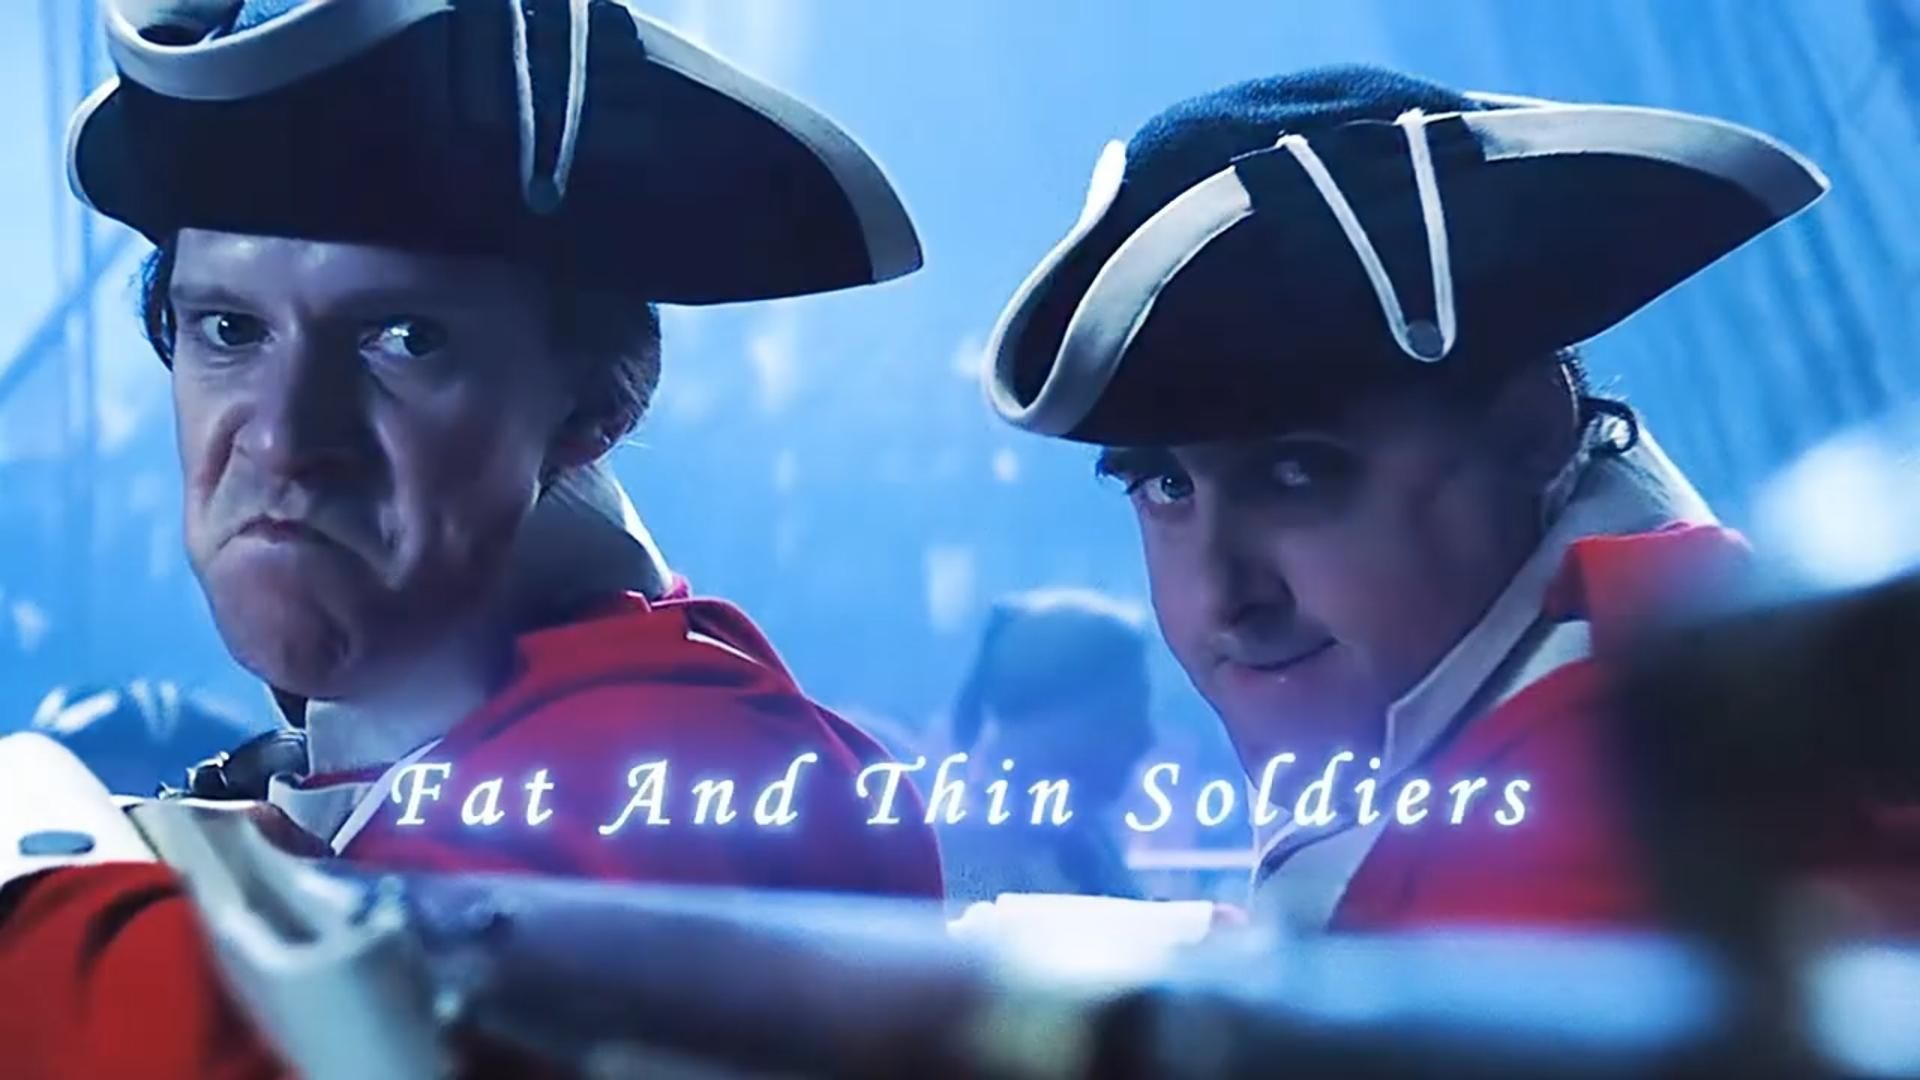 “士兵与海盗中的“卧龙凤雏”组合，简直差点盖过杰克船长的笑点。”